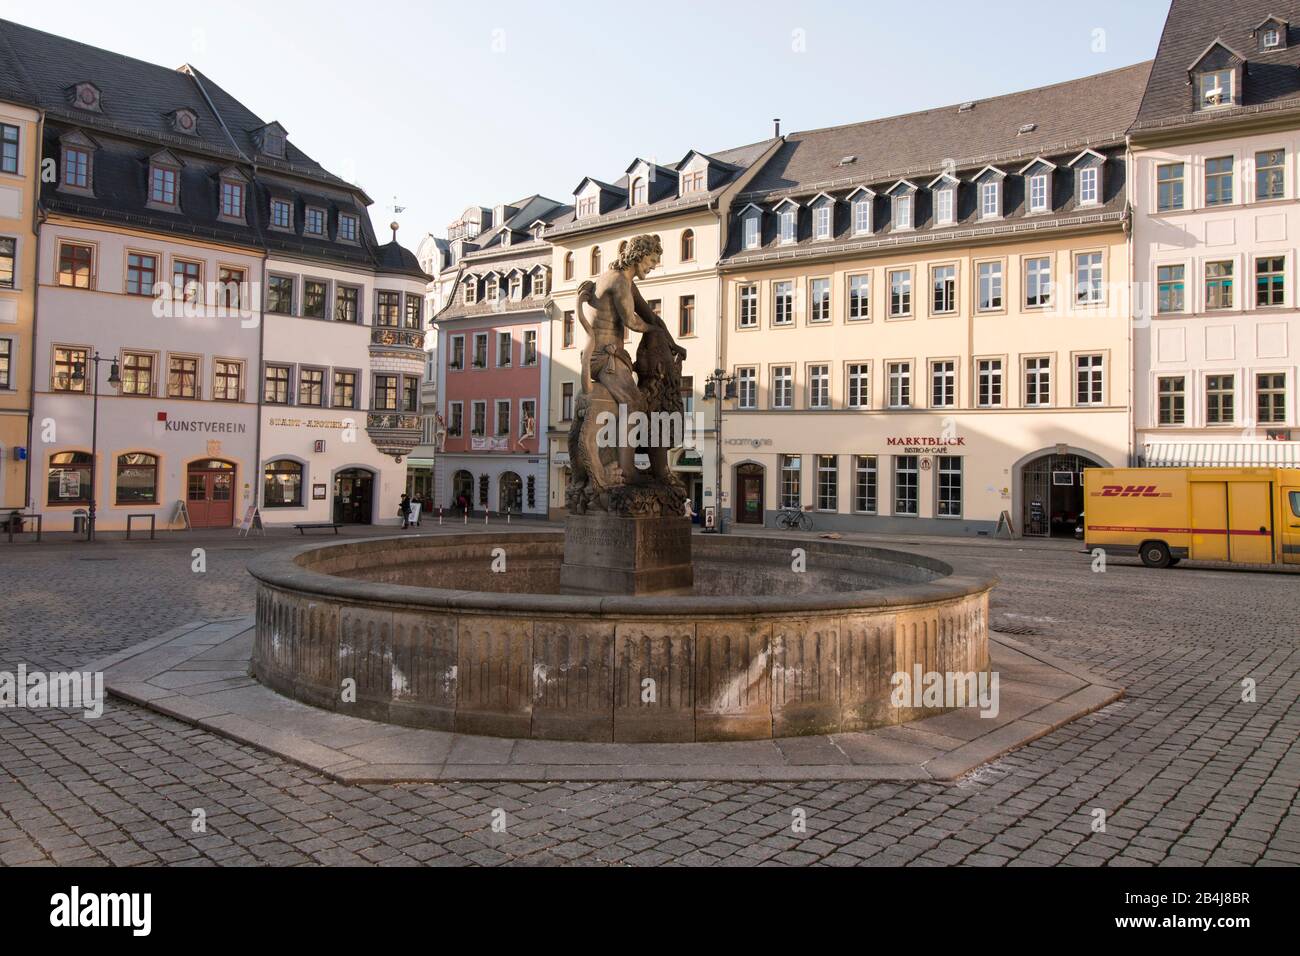 Deutschland, Thüringen, Gera, historischer Marktplatz mit Samson-Brunnen, stellt den biblischen Löwen-Tramp Simson dar. Stockfoto